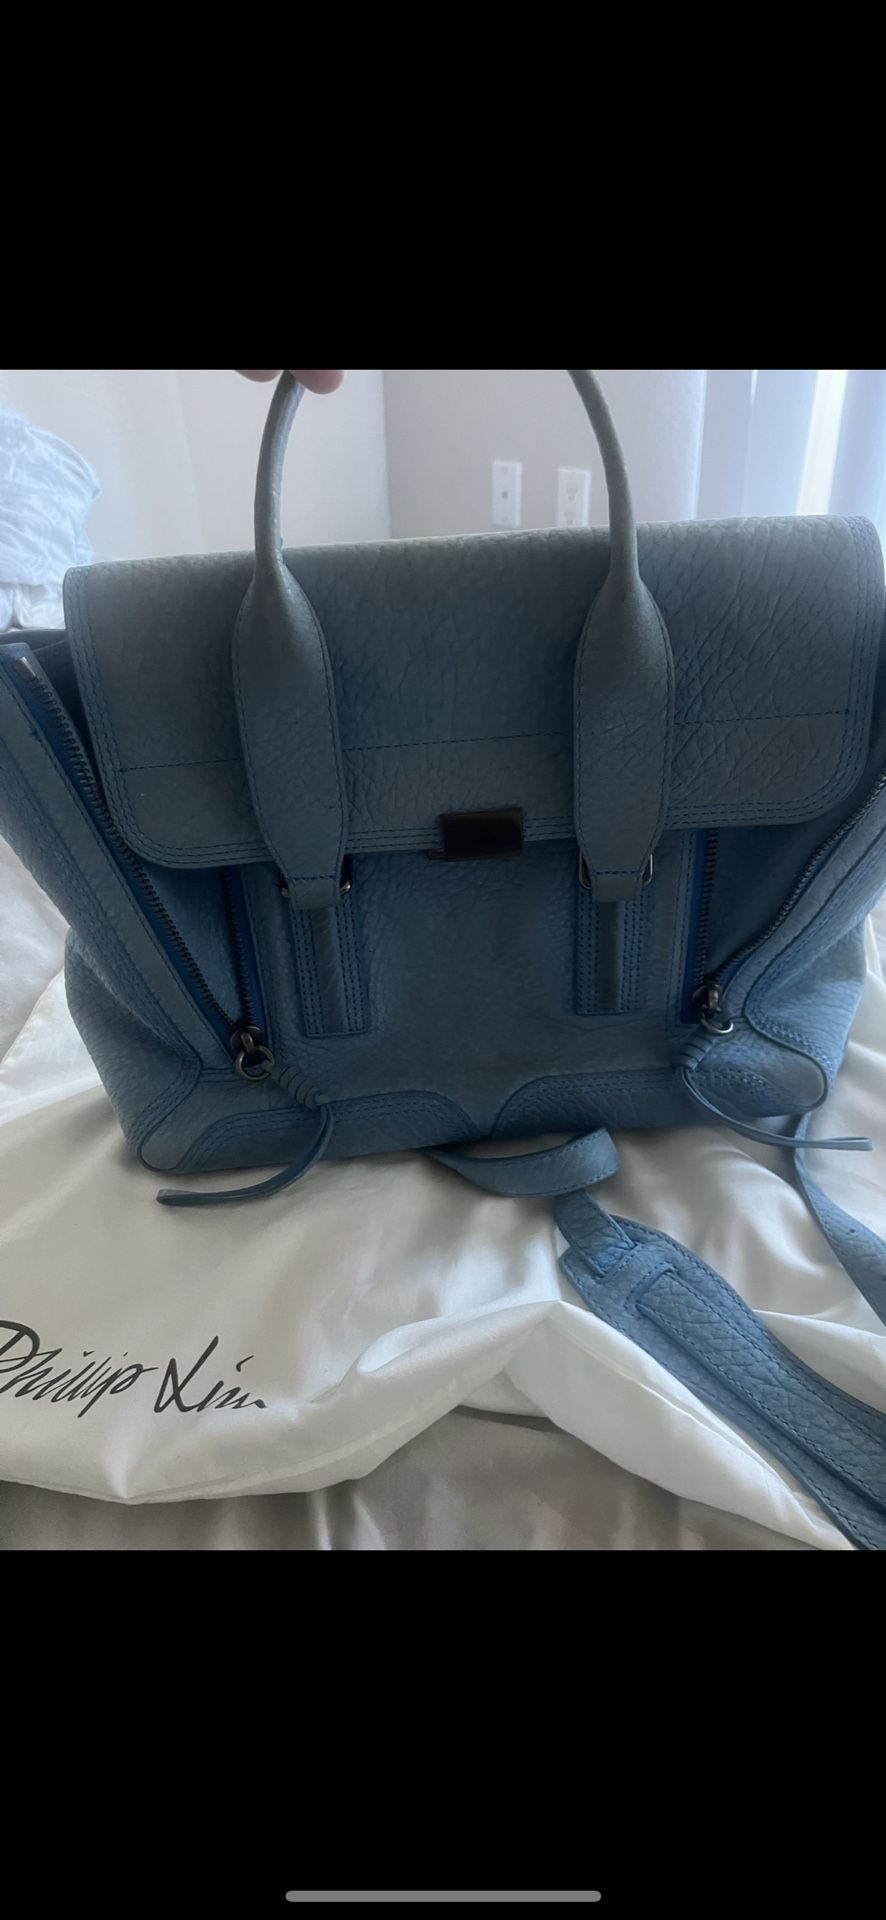 Phillip Lim blue handbag